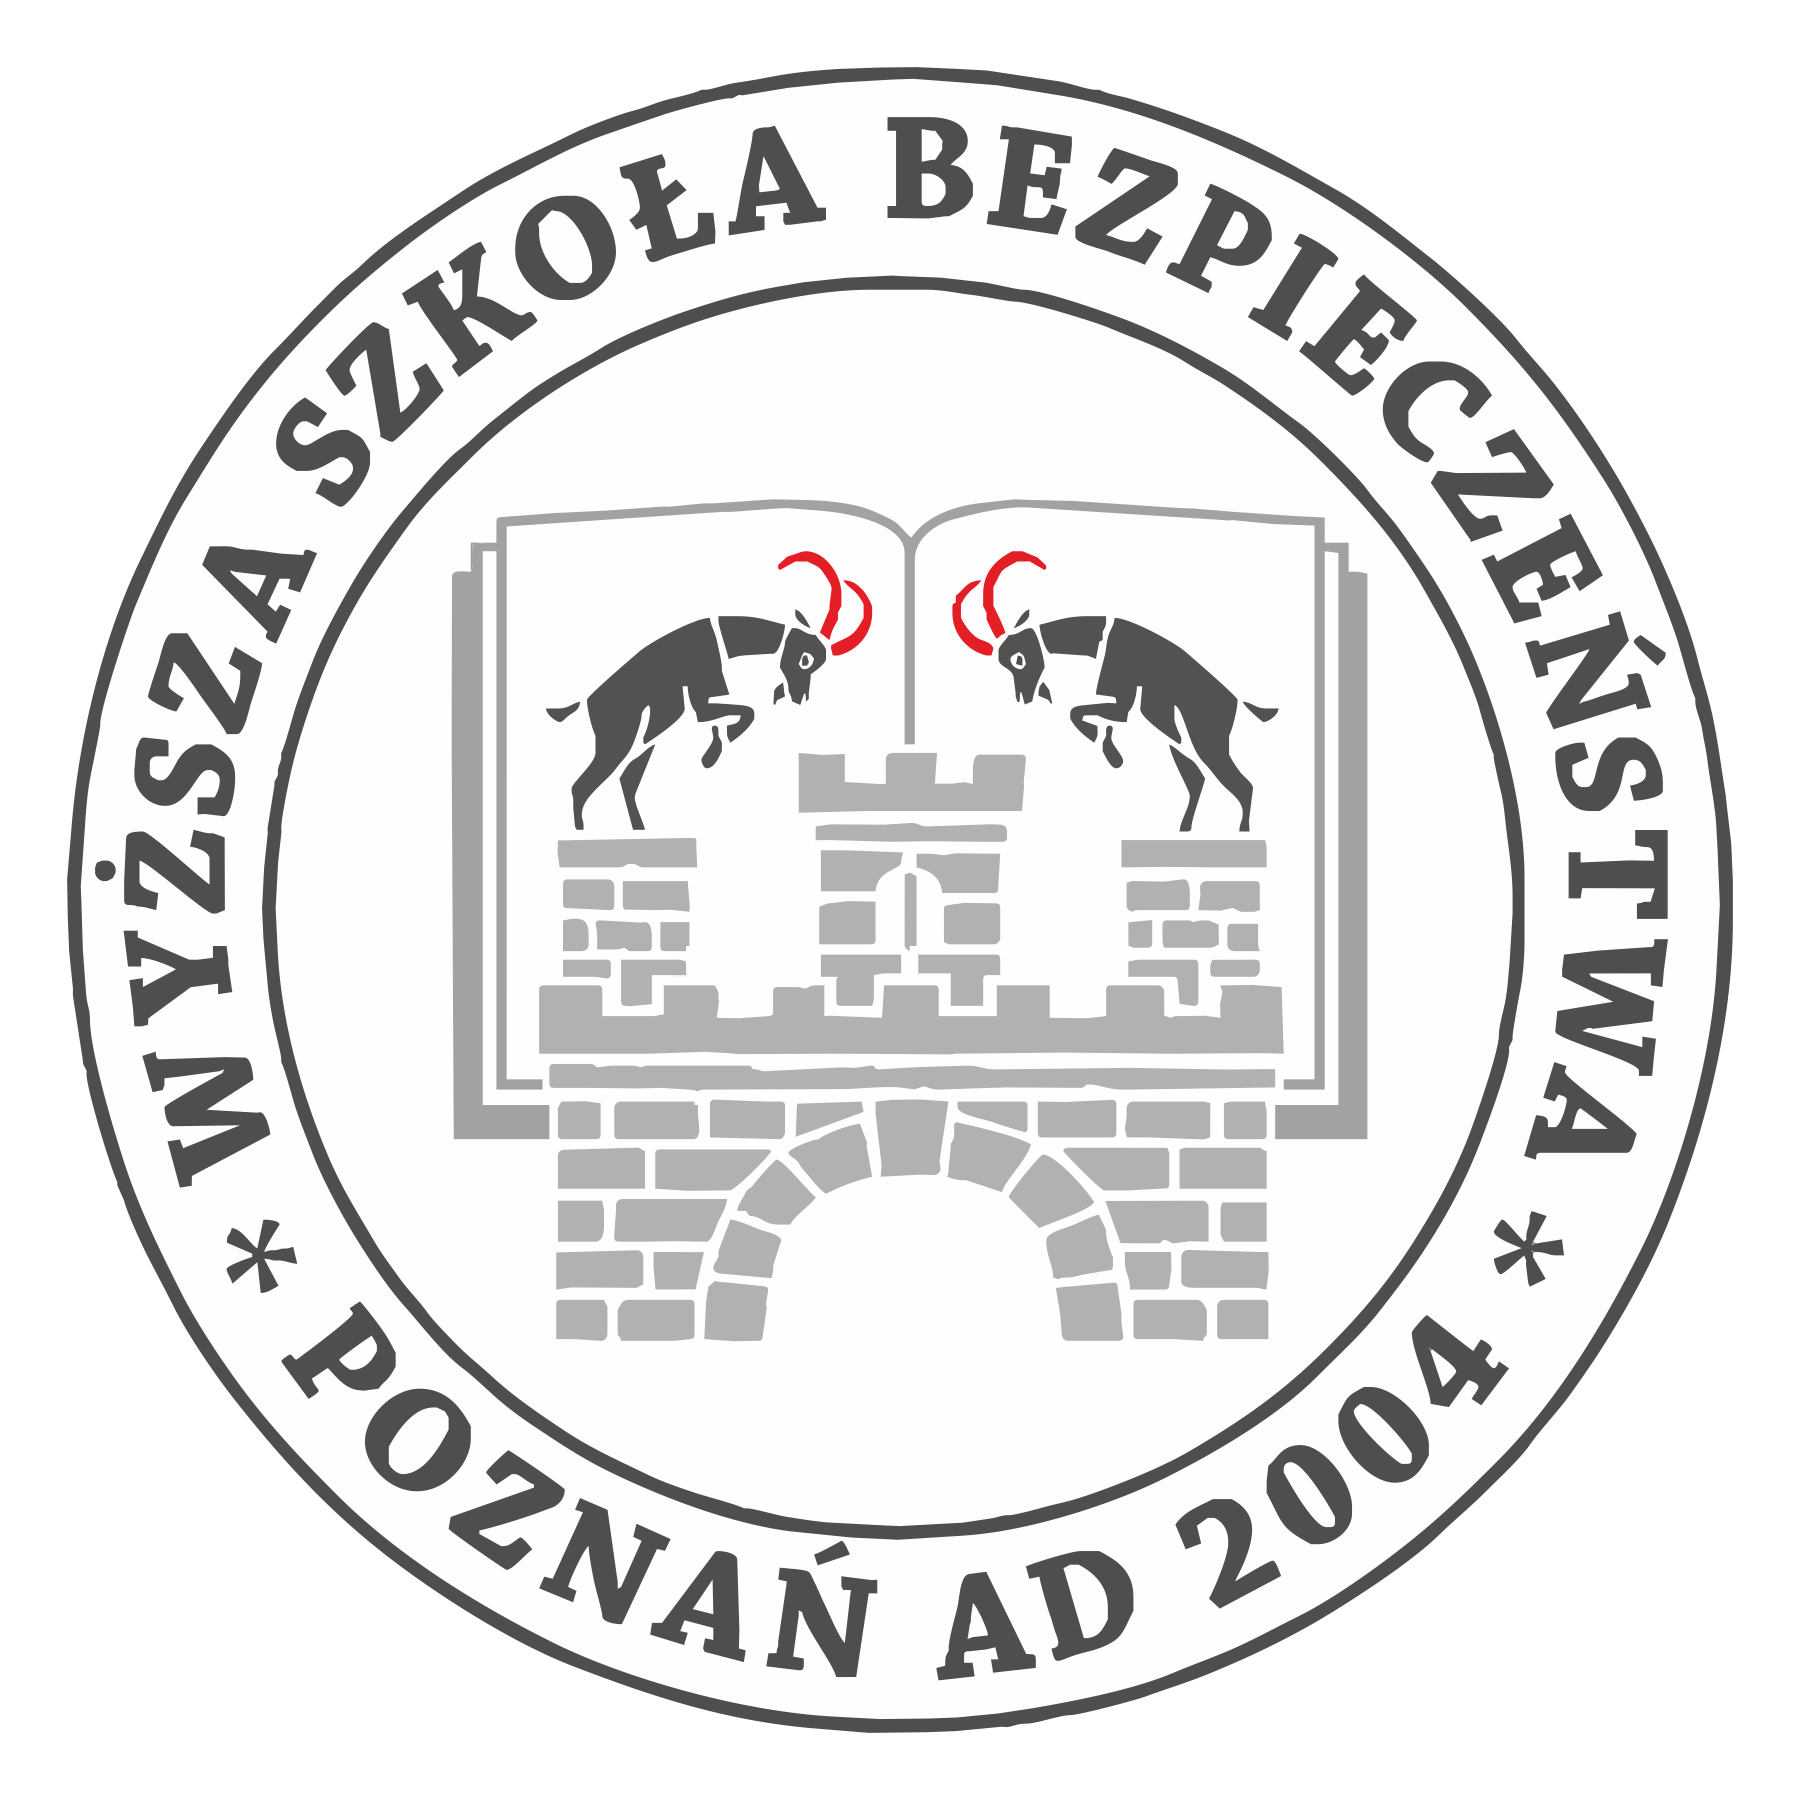 wyzsza-szkola-bezpieczenstwa-logo.png